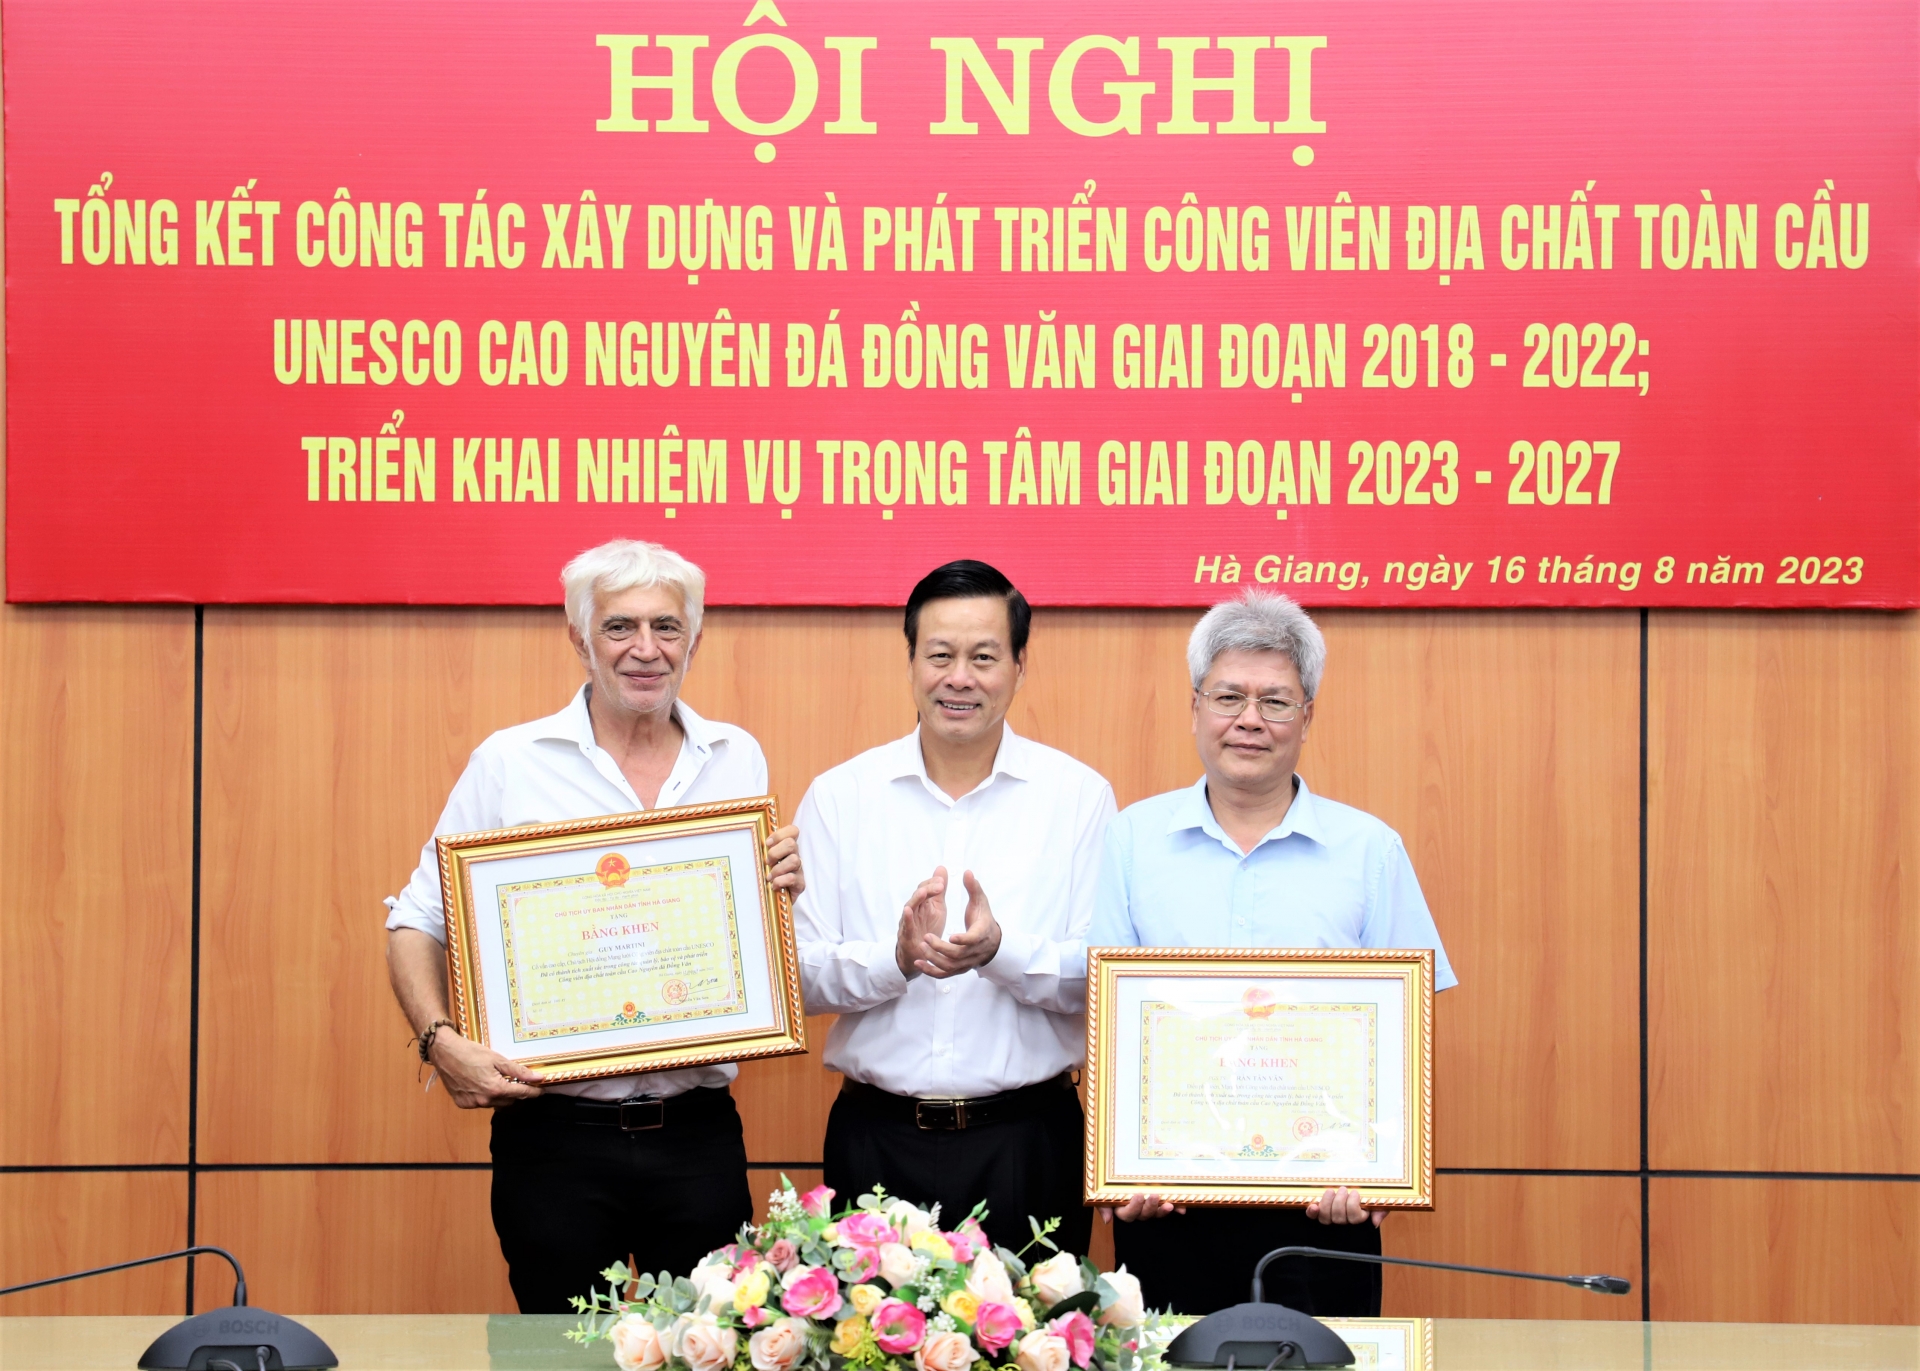 Hà Giang: Tổng kết công tác xây dựng và phát triển Công viên Địa chất toàn cầu Unesco Cao nguyên đá Đồng Văn giai đoạn 2018 – 2022 - Ảnh 6.